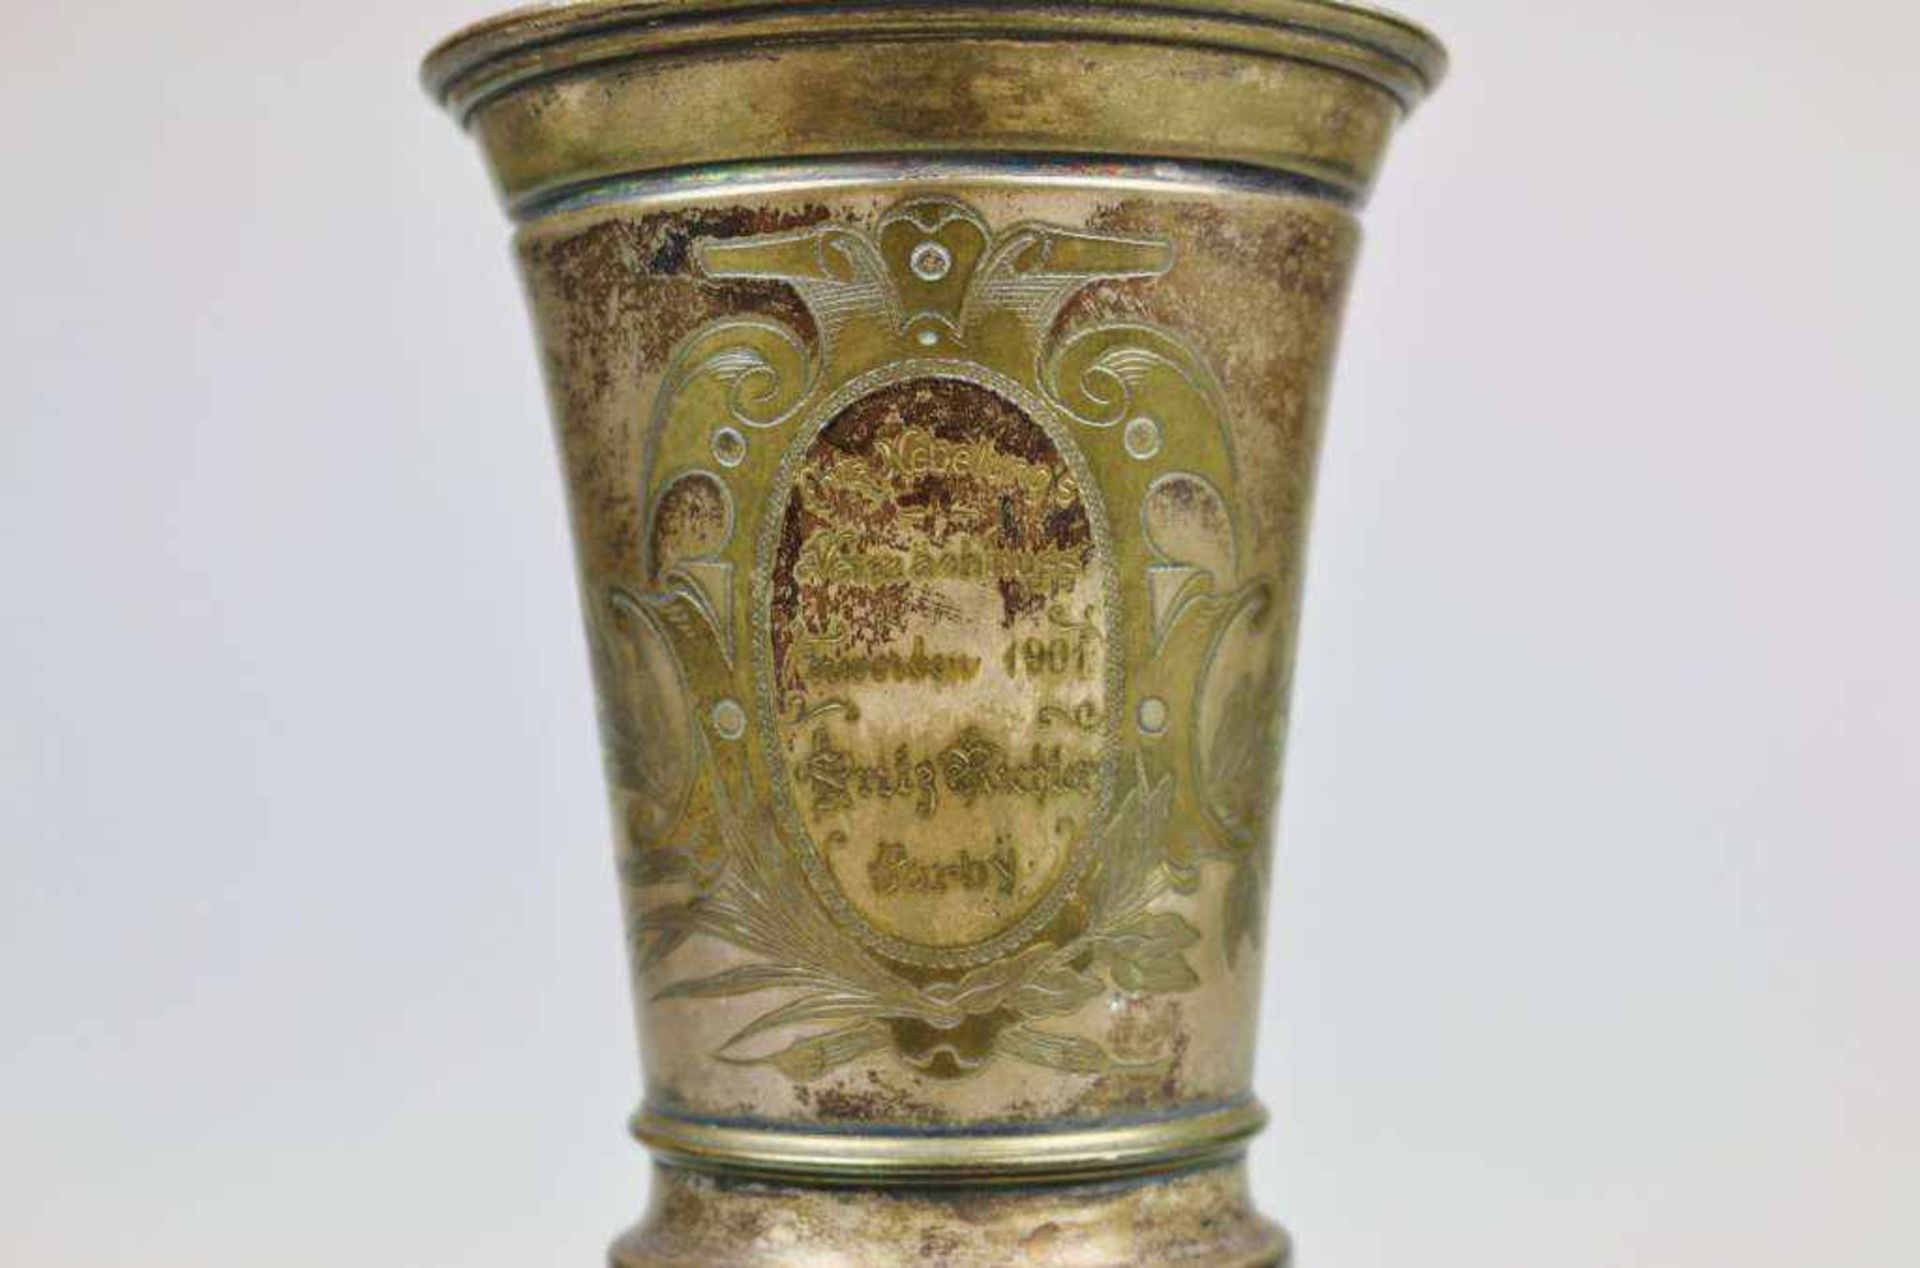 Deckelpokal, Messing, versilbert, innen vergoldet, Historismus, dat. 1901. Kelchförmiger Korpus - Bild 3 aus 4